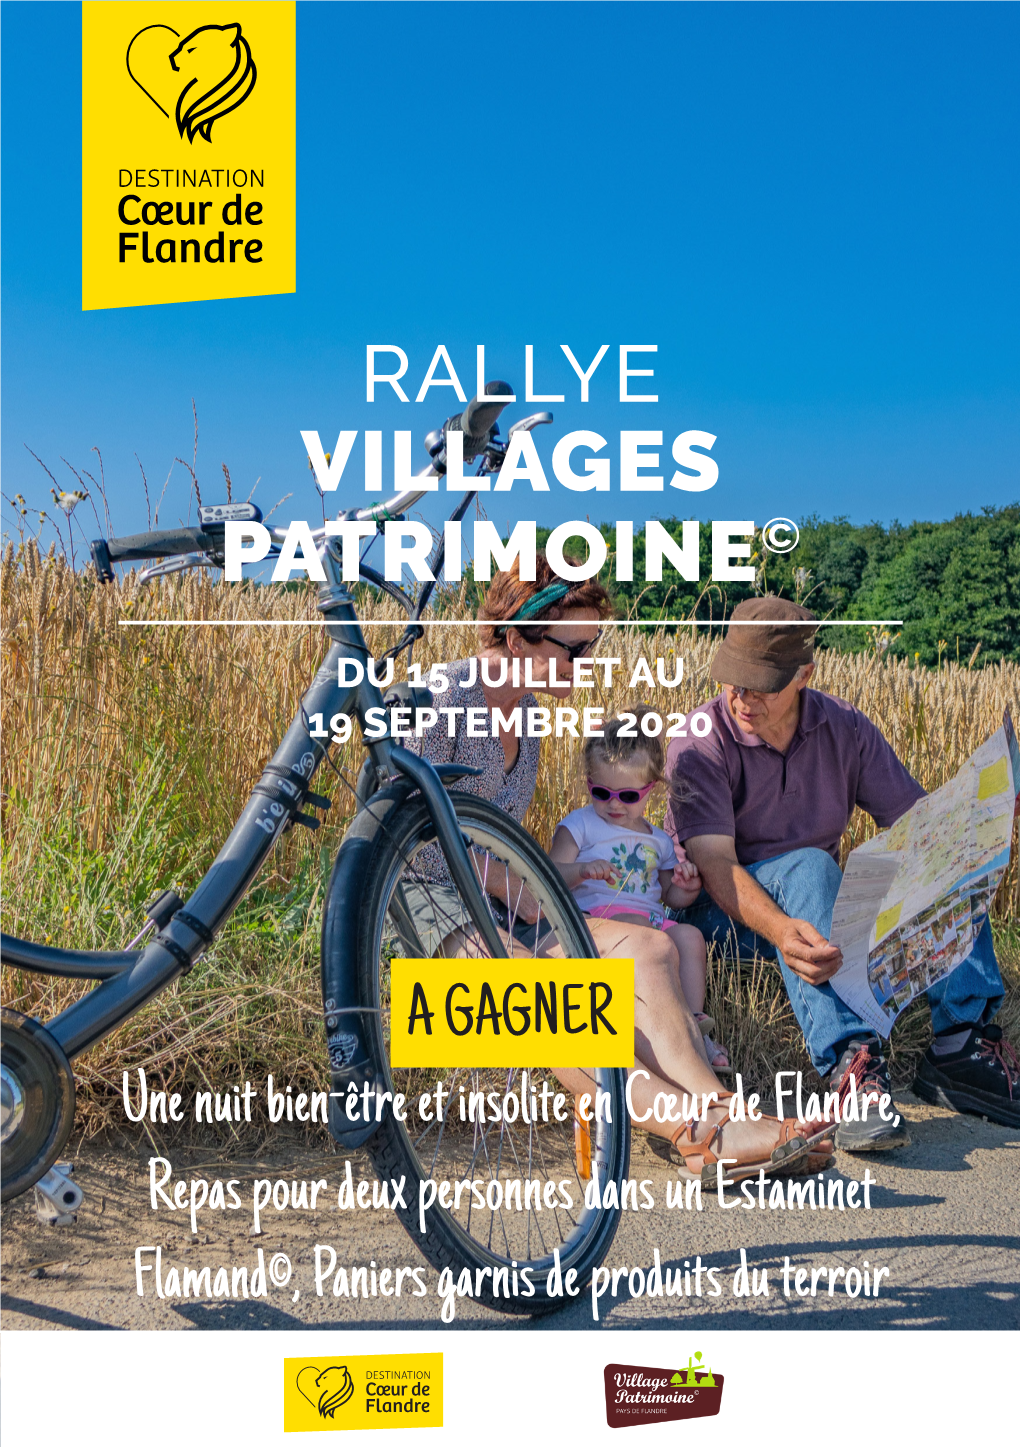 Rallye Villages Patrimoine©